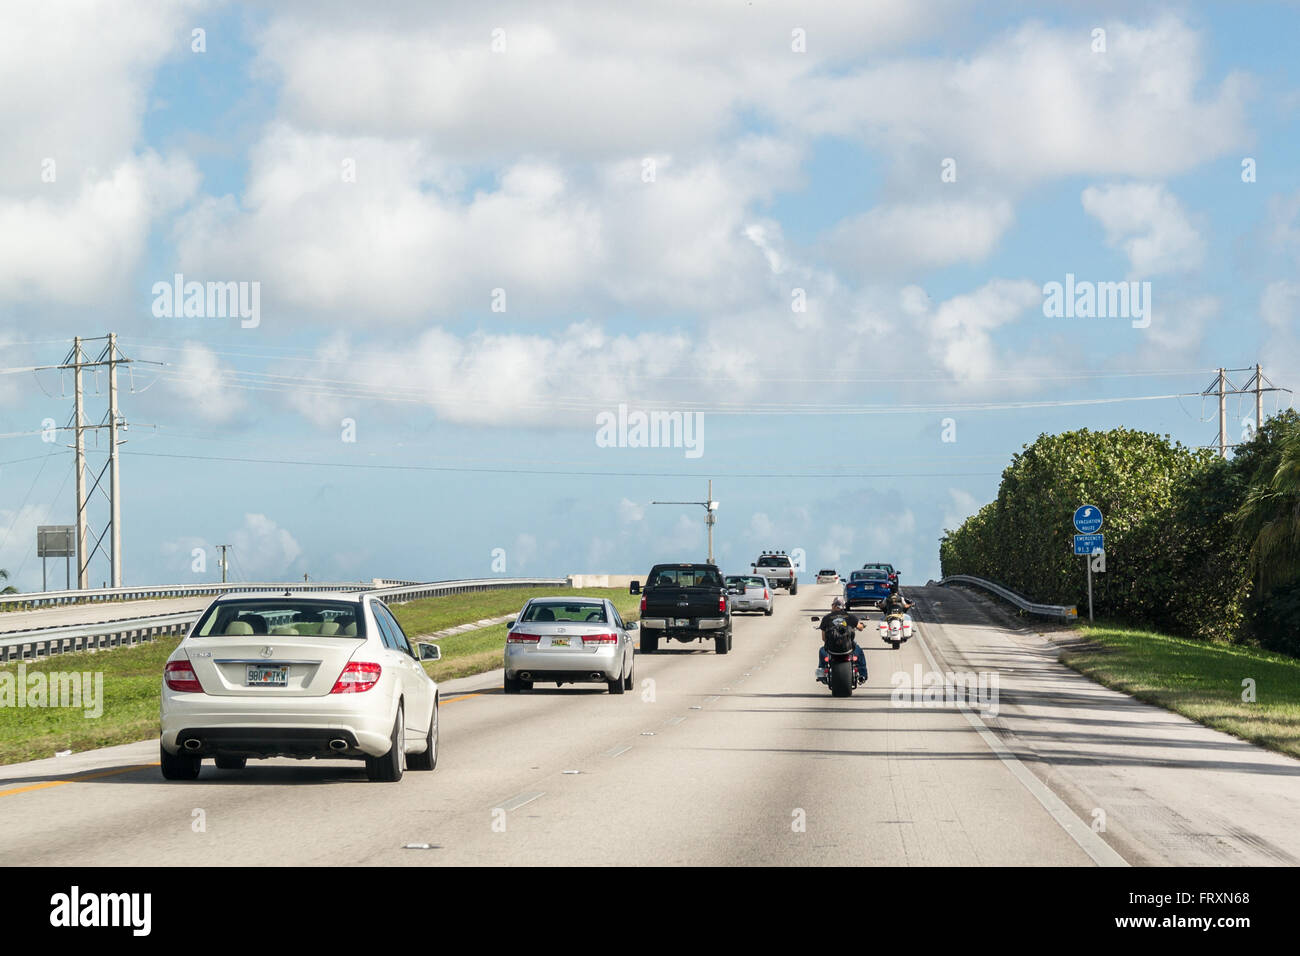 Le trafic avec les voitures et les motos sur la route dans le sud de la Floride, USA Banque D'Images